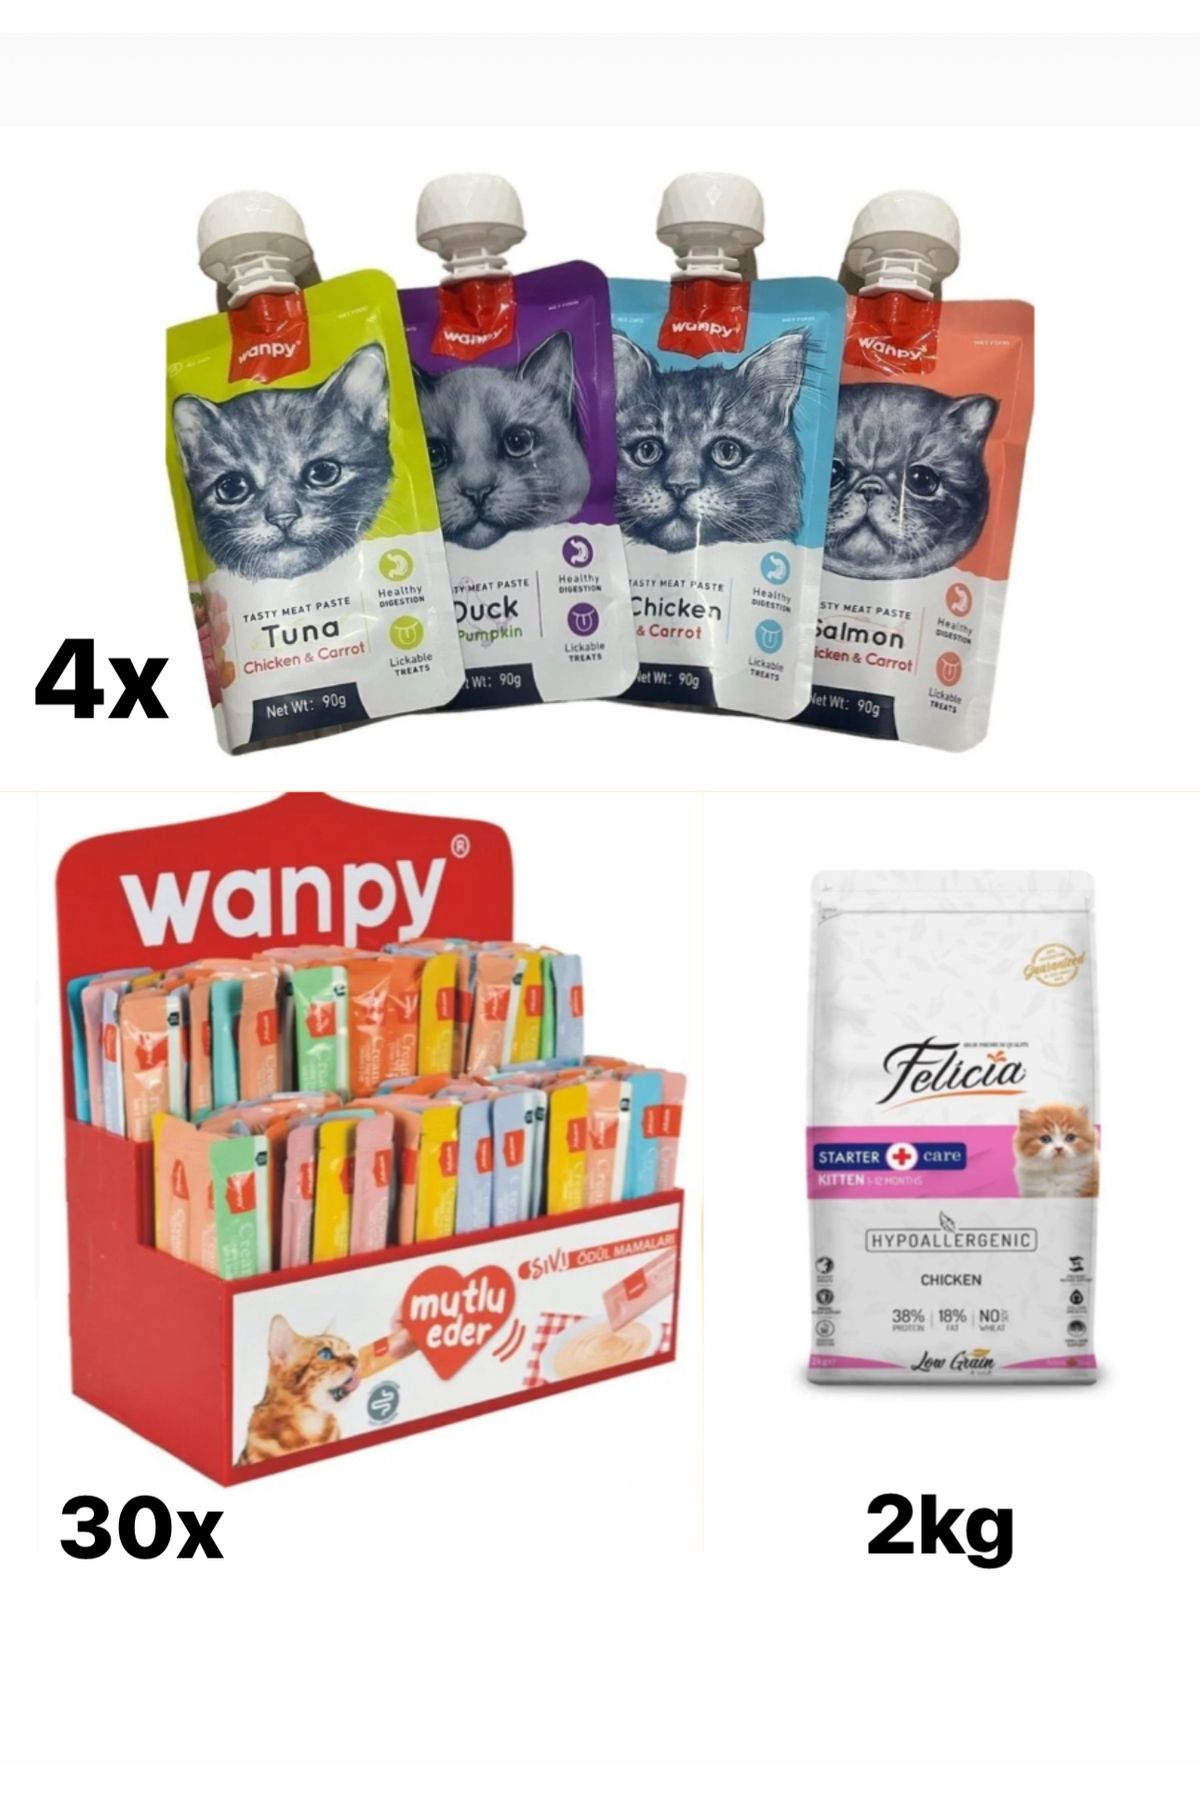 Felicia Wanpy creamy30x + felicia kitten2kg + Wanpy tastı mest paste 4x